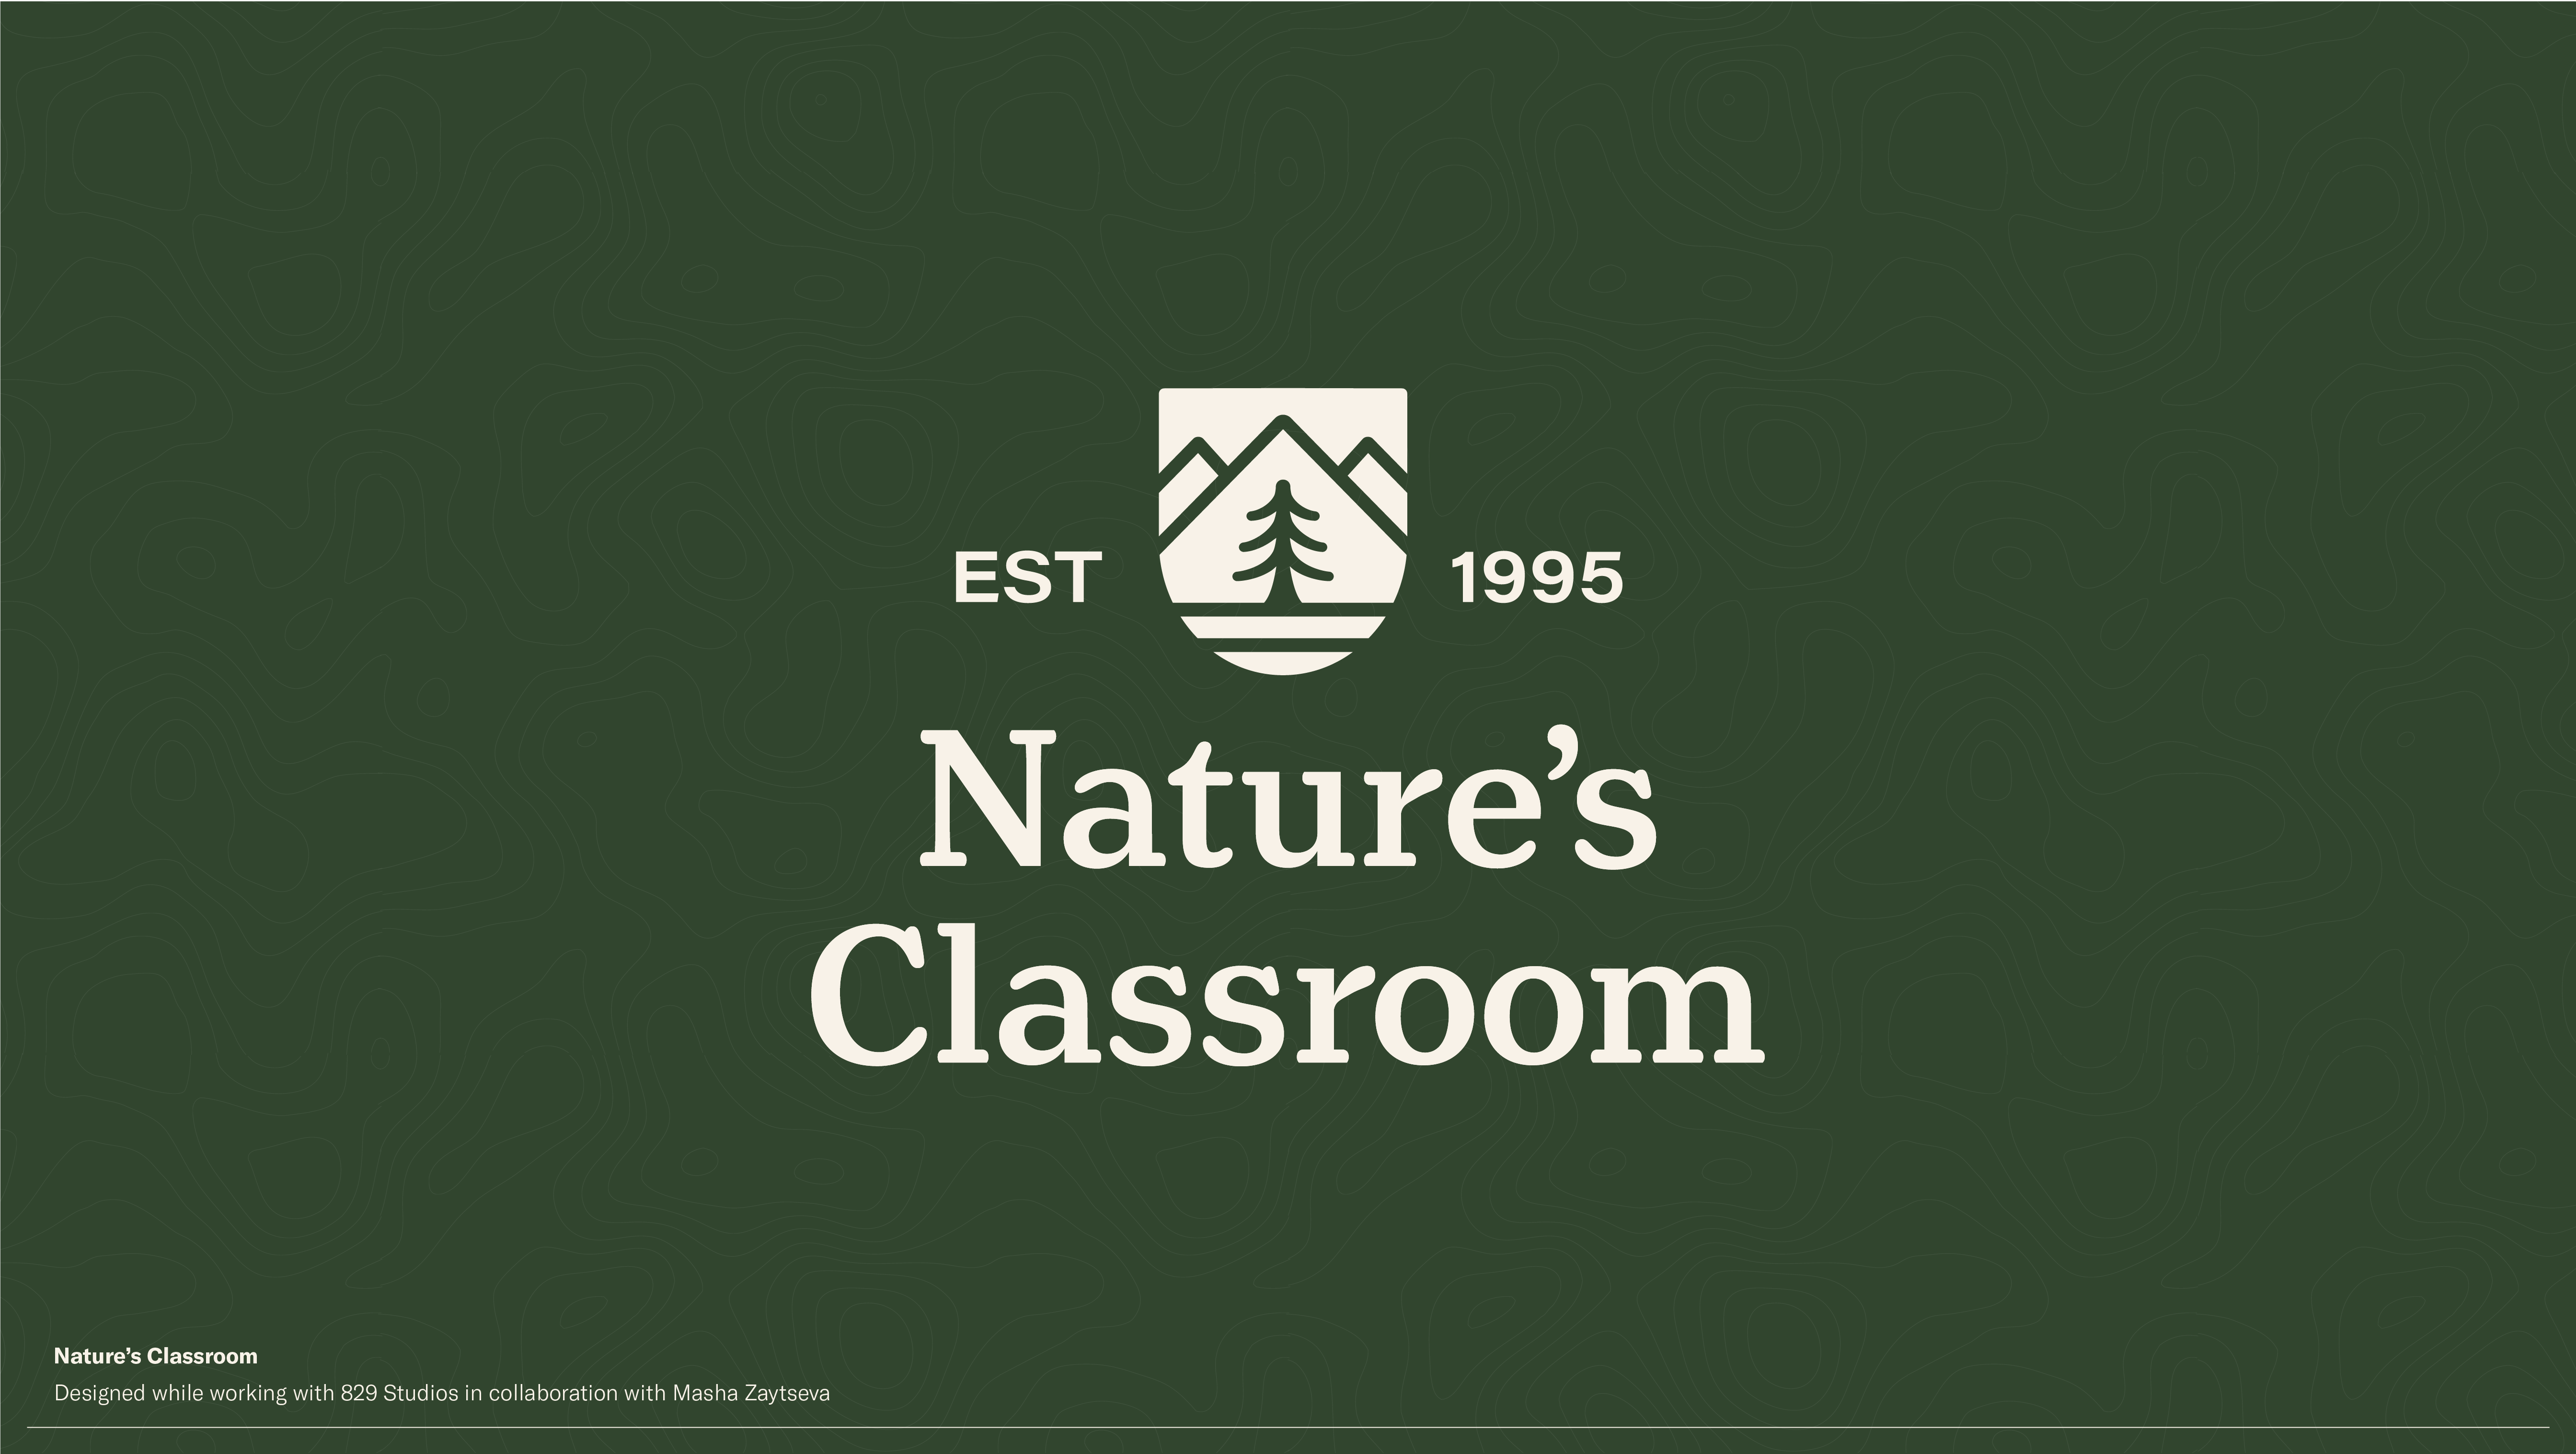 NaturesClassroom_LOGO-13